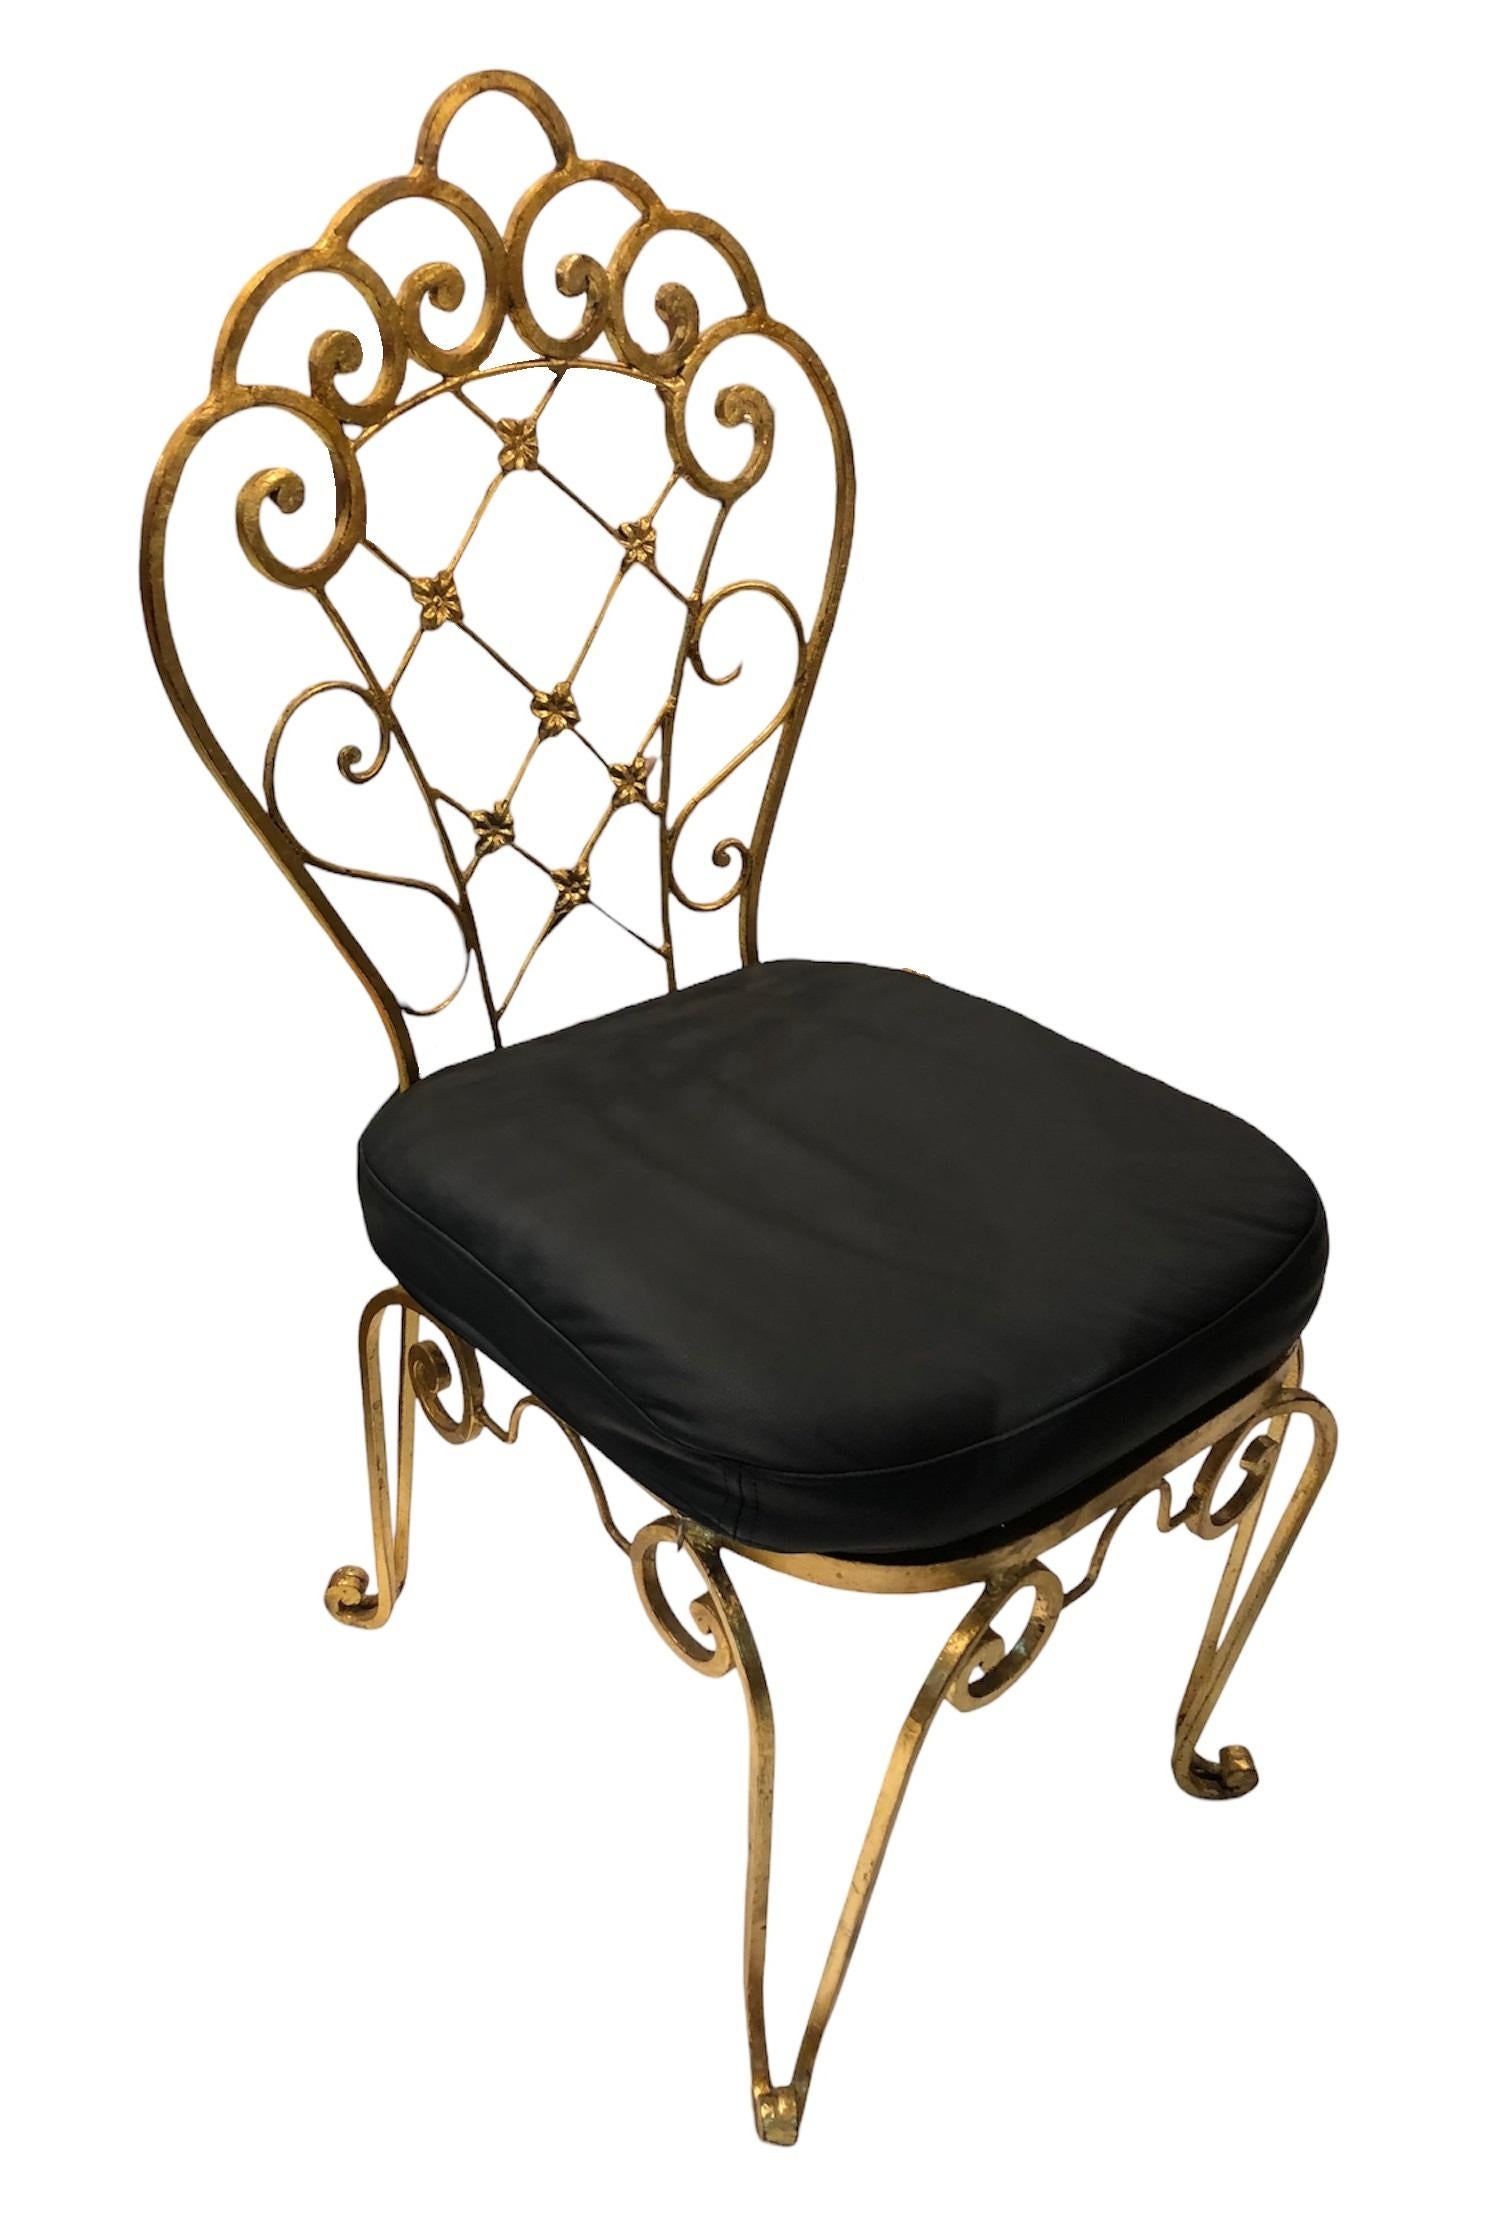 2 Stühle
Eisen auf Blattgold
Seit 1982 haben wir uns auf den Verkauf von Art Deco, Jugendstil und Vintage spezialisiert. Wenn Sie Fragen haben, stehen wir Ihnen gerne zur Verfügung.
Drücken Sie auf die Schaltfläche 